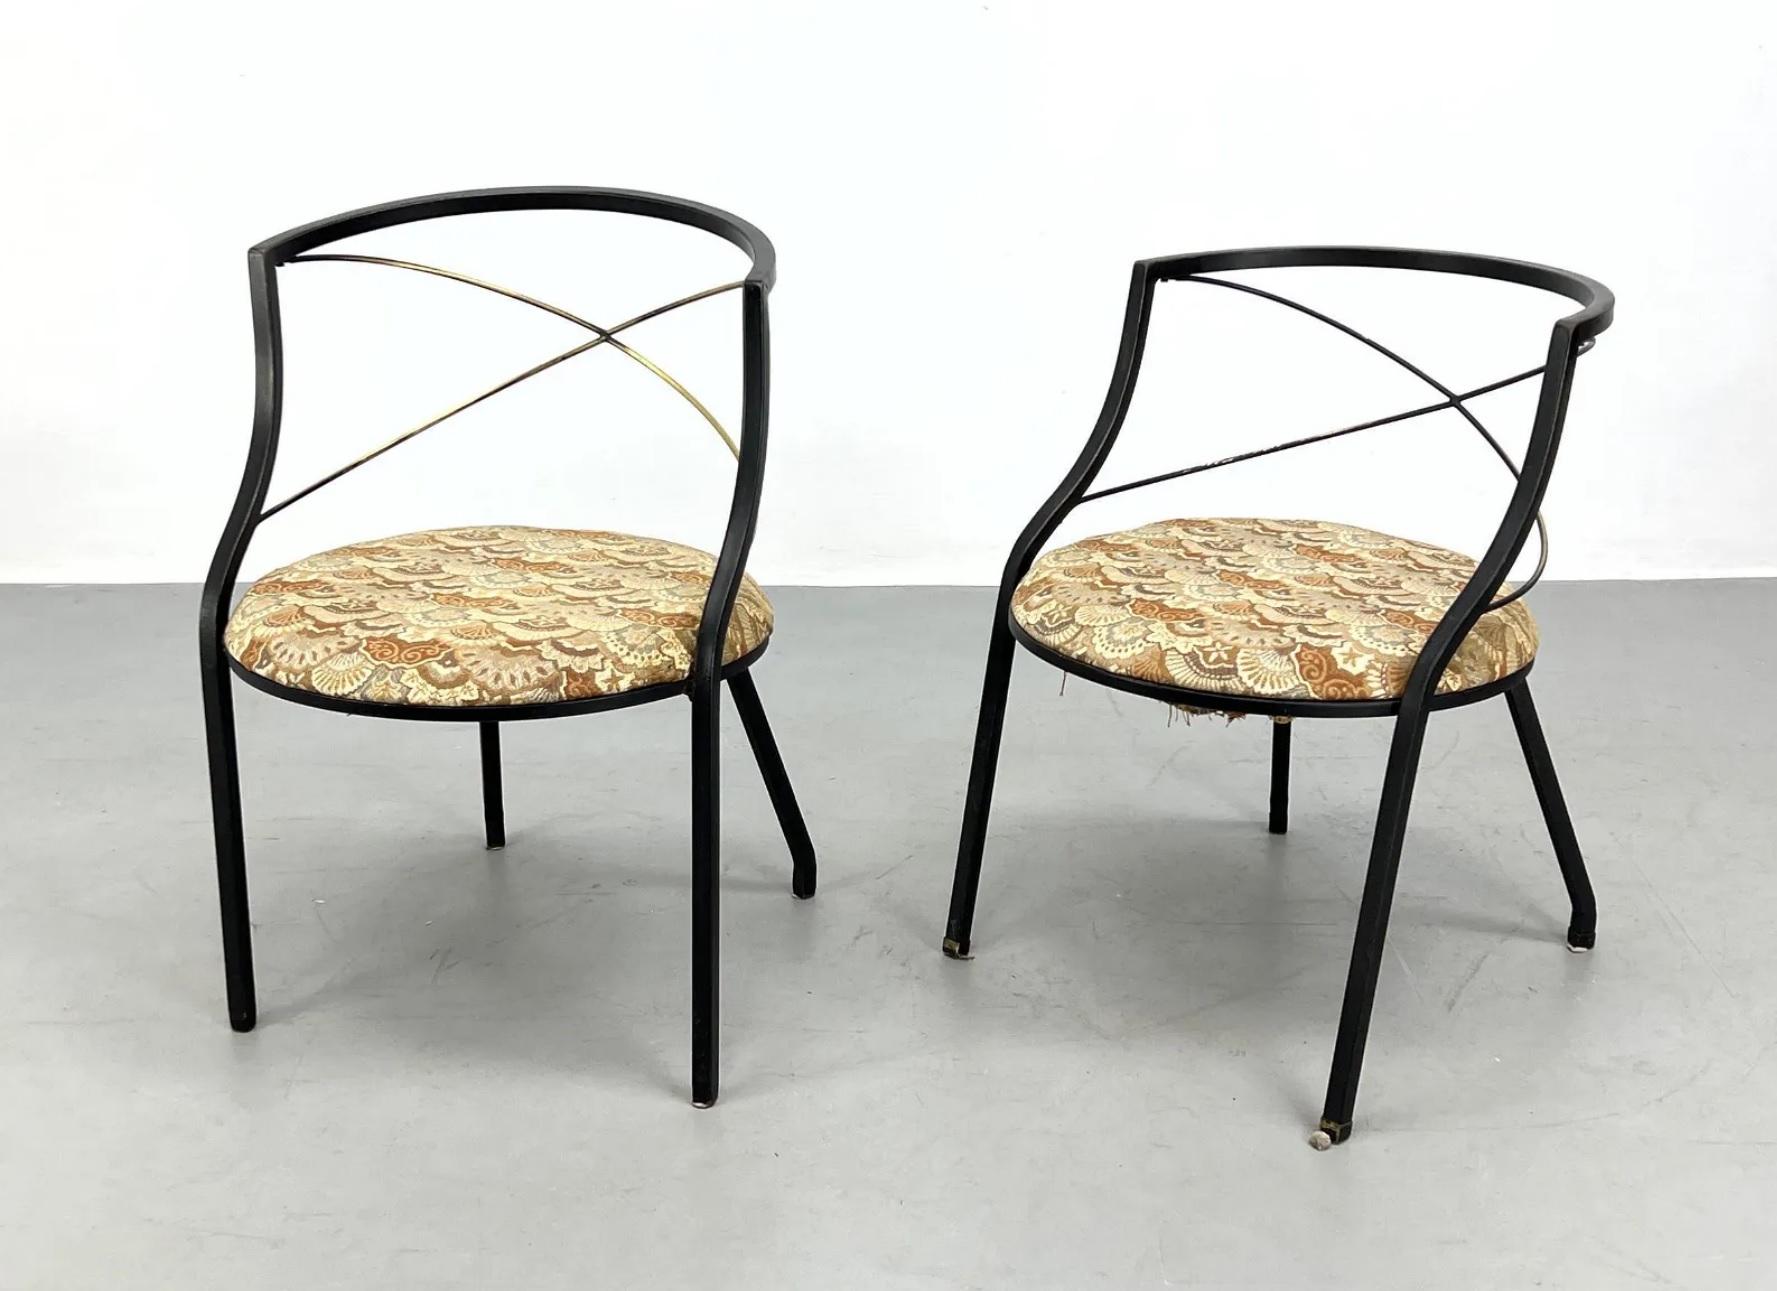 Un ensemble de deux chaises de patio de style Maison Jansen, avec dossier transversal à barreaux en bronze (barreaux estampillés BRONZE). Il ne s'agit pas exactement d'une paire assortie, l'une des chaises est plus courte de 5 cm ; cette différence